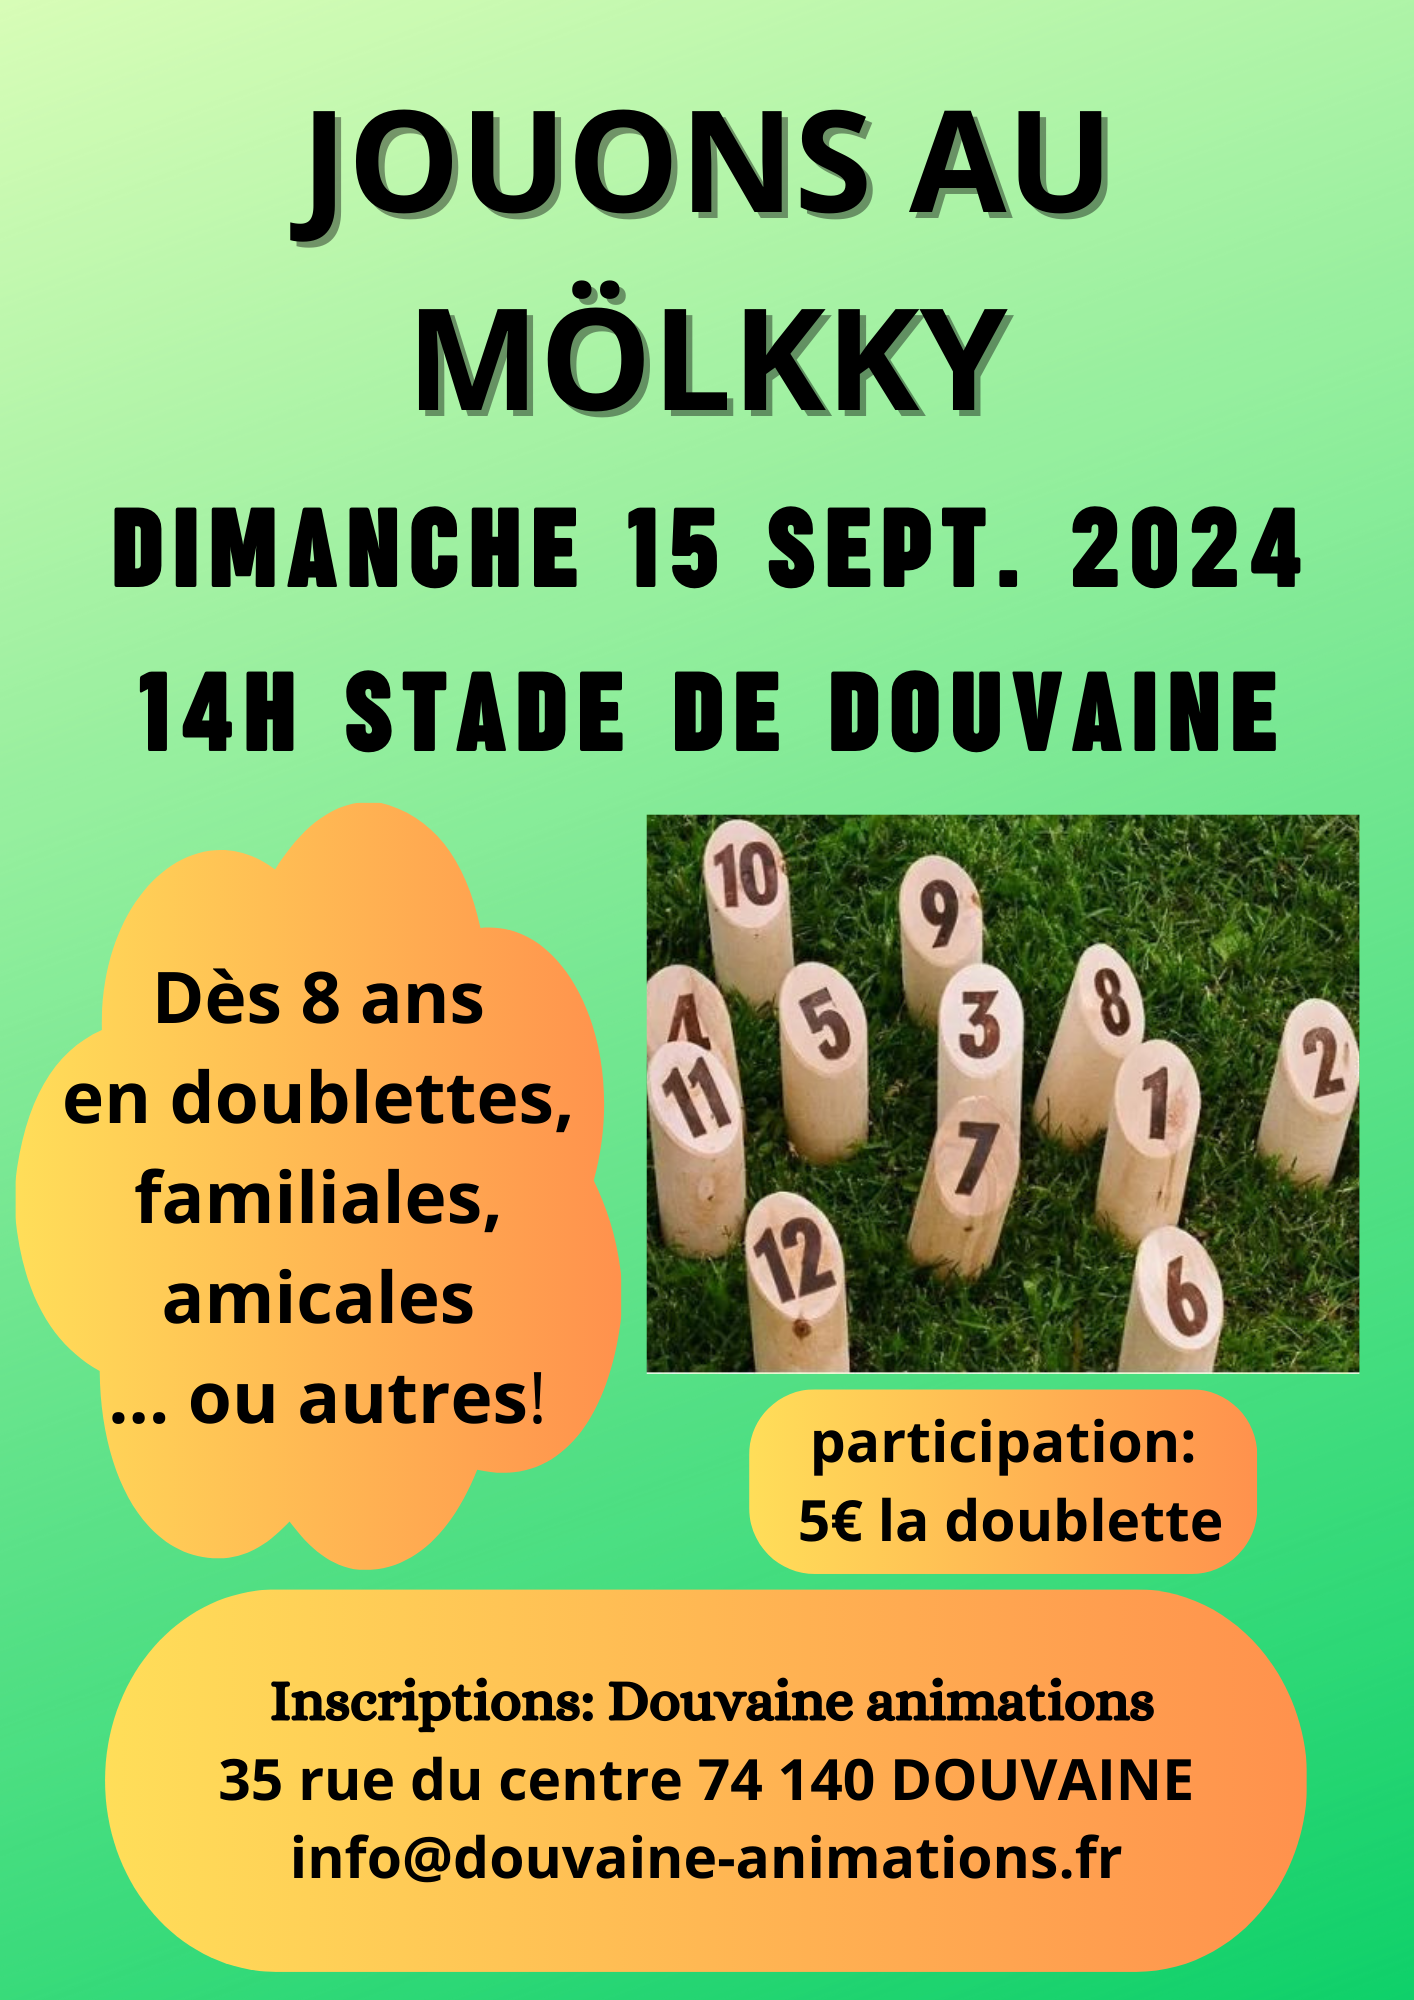 Affiche de l'après-midi Möllky prévue le 15 septembre 2024 au Stade de Douvaine